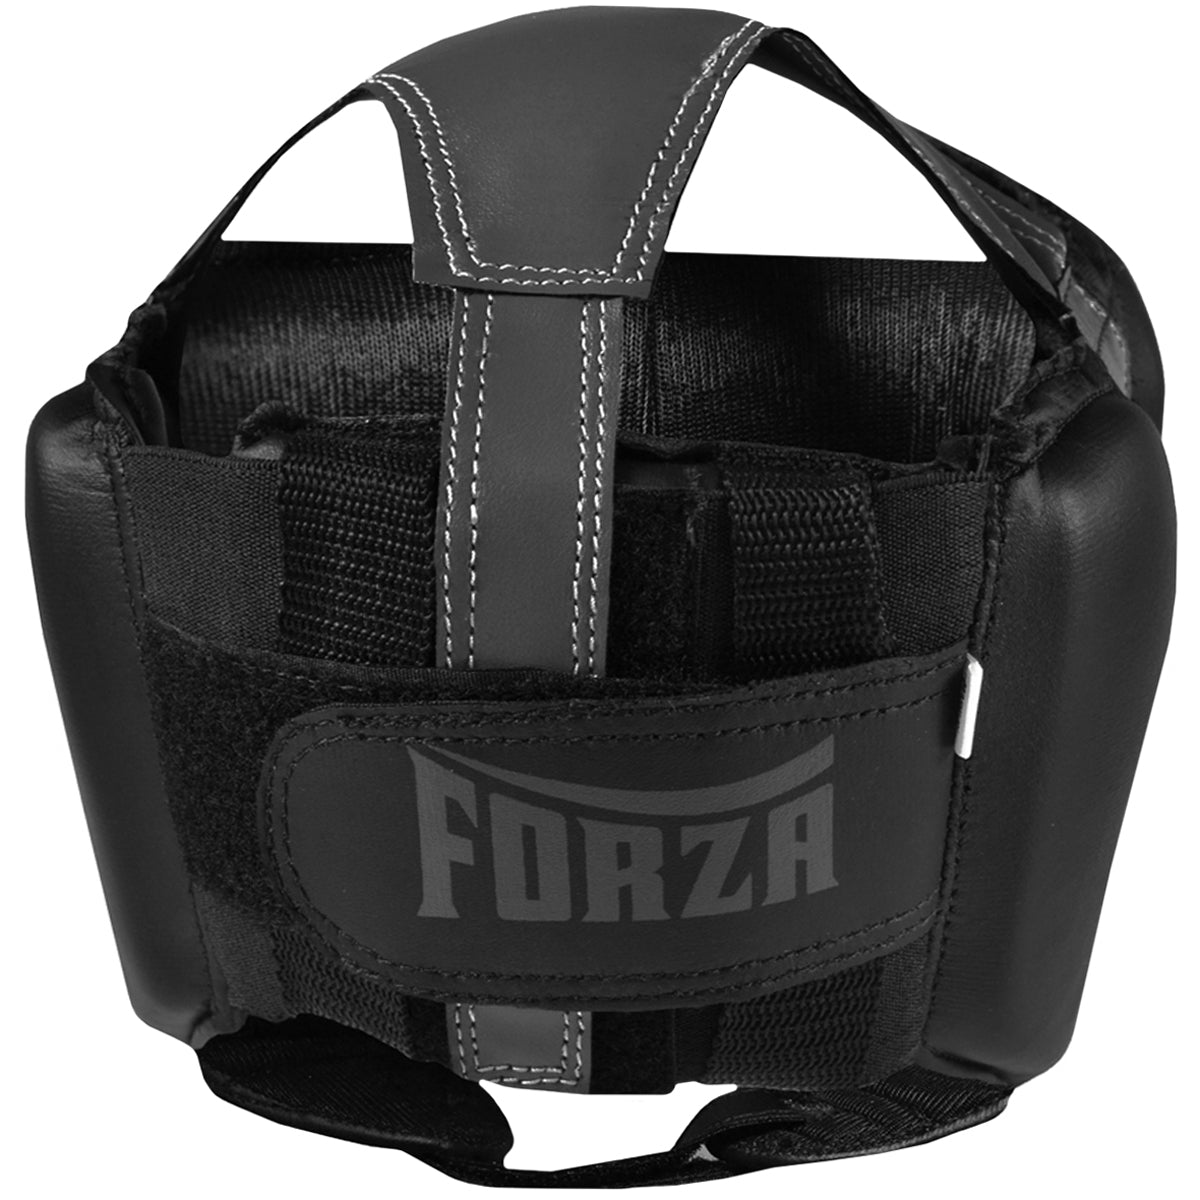 Forza Sports Vinyl Full Face Boxing and MMA Headgear - Black/Gray Forza Sports